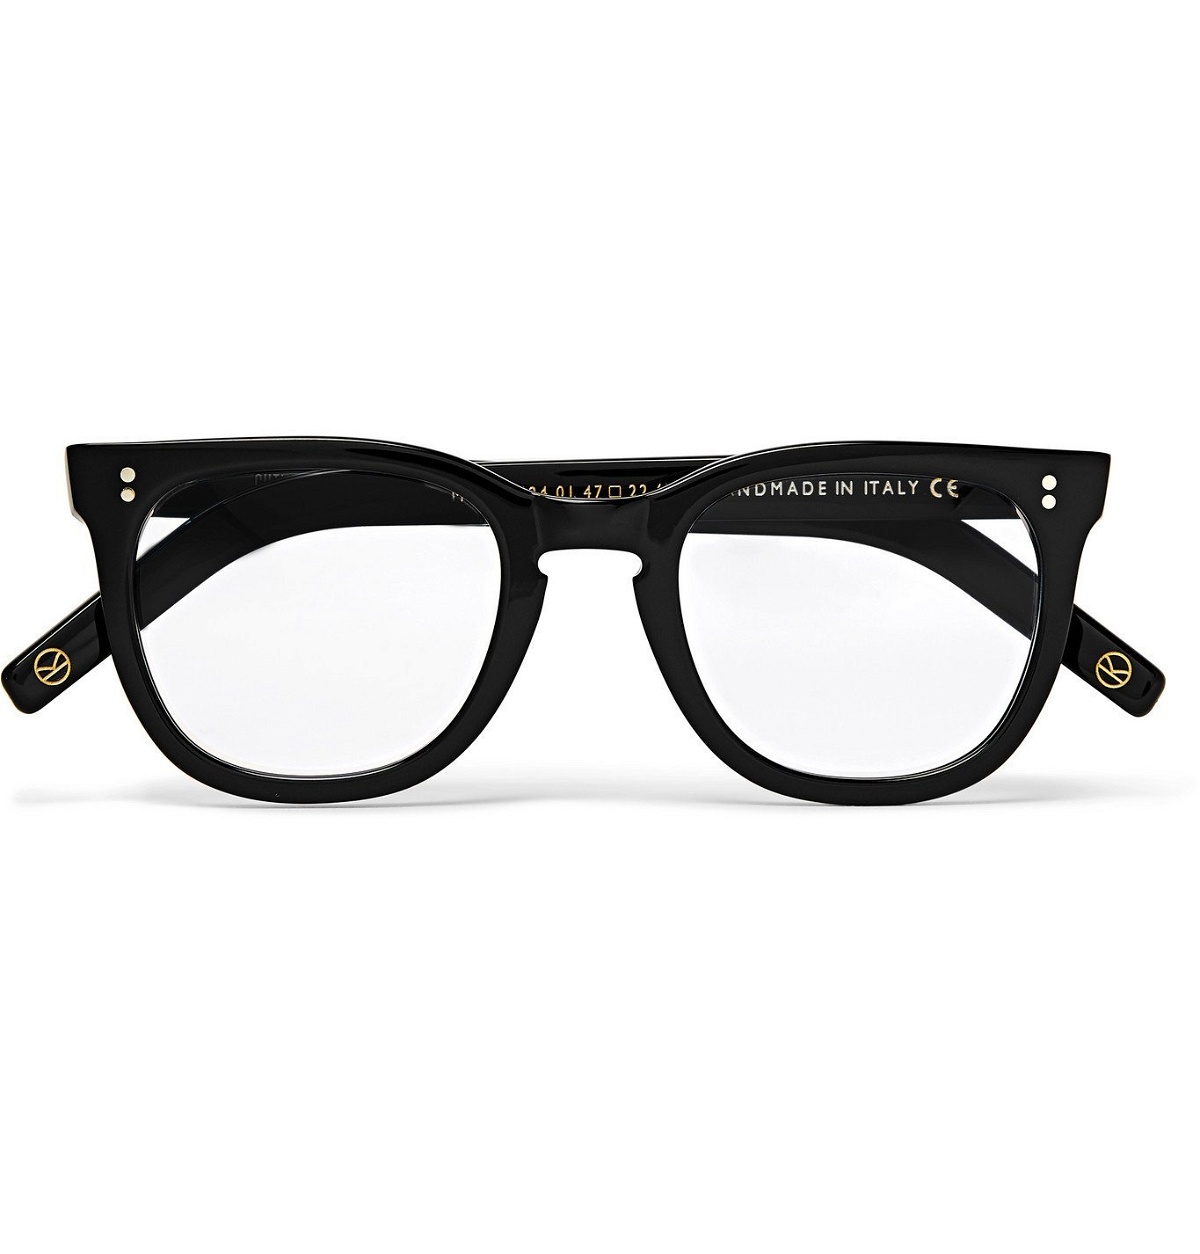 Photo: Kingsman - Cutler and Gross D-Frame Tortoiseshell Acetate Optical Glasses - Black